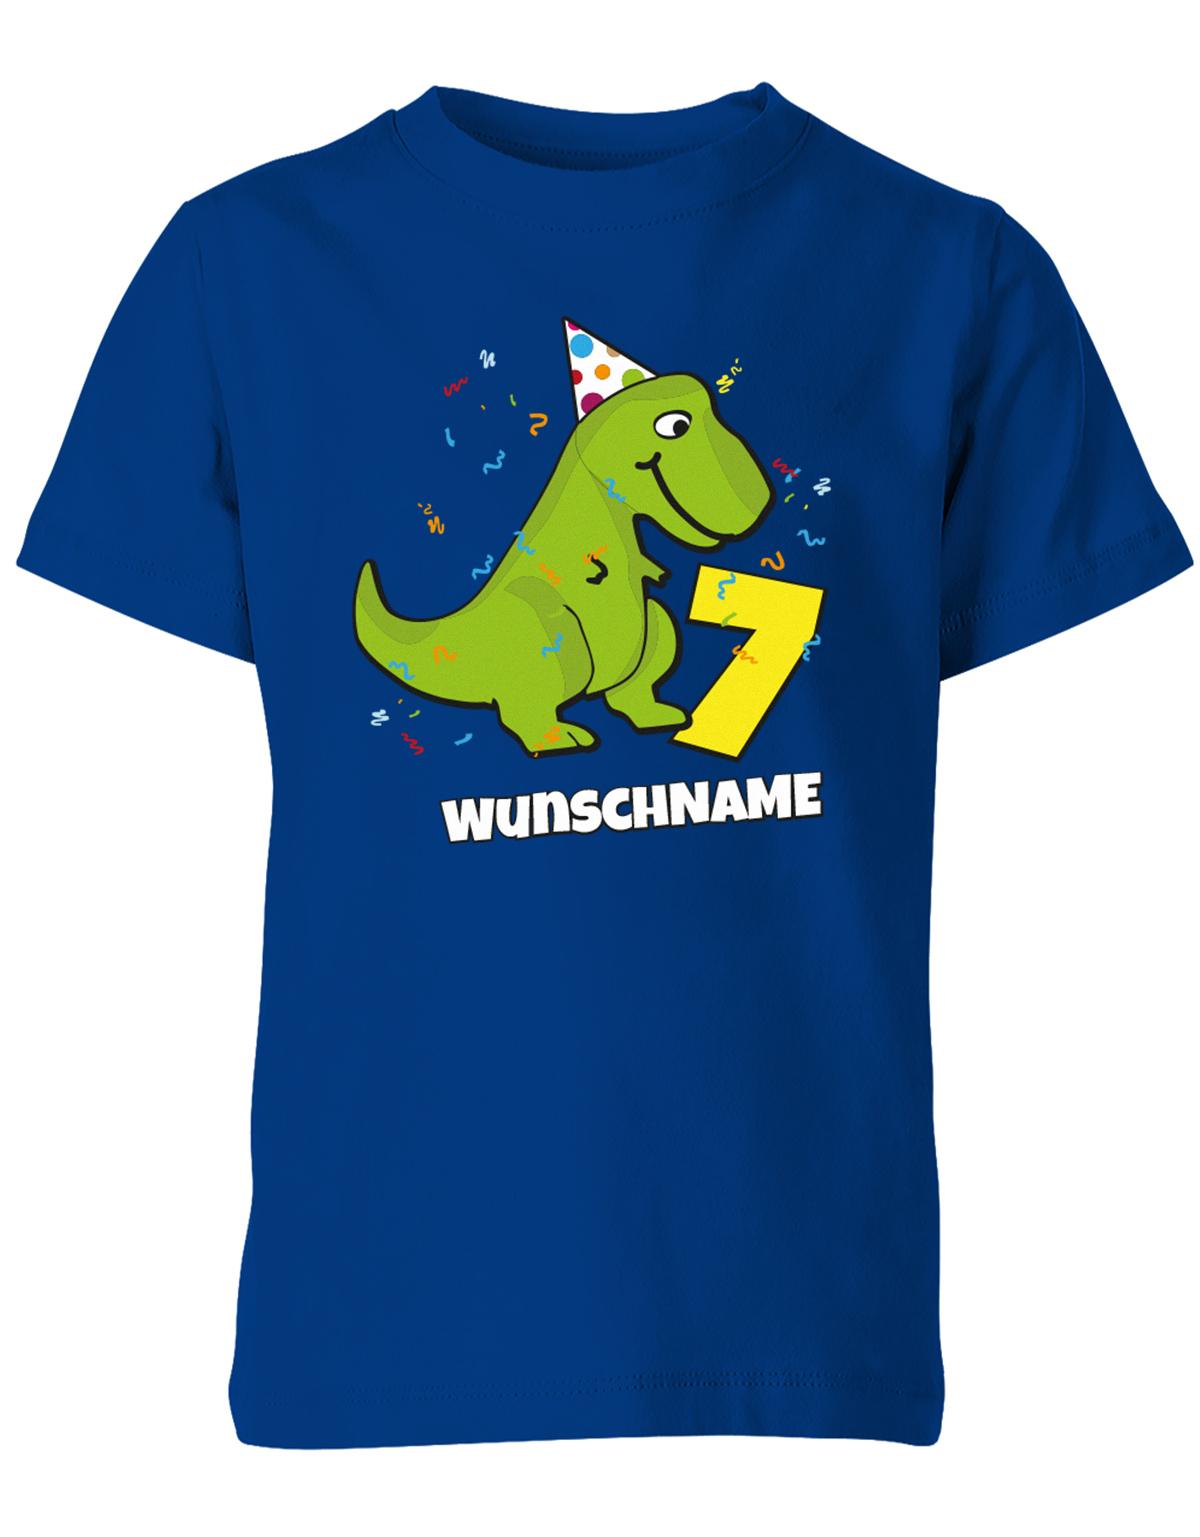 ich-bin-7-Dinosaurier-t-rex-wunschname-geburtstag-kinder-shirt-royalblau